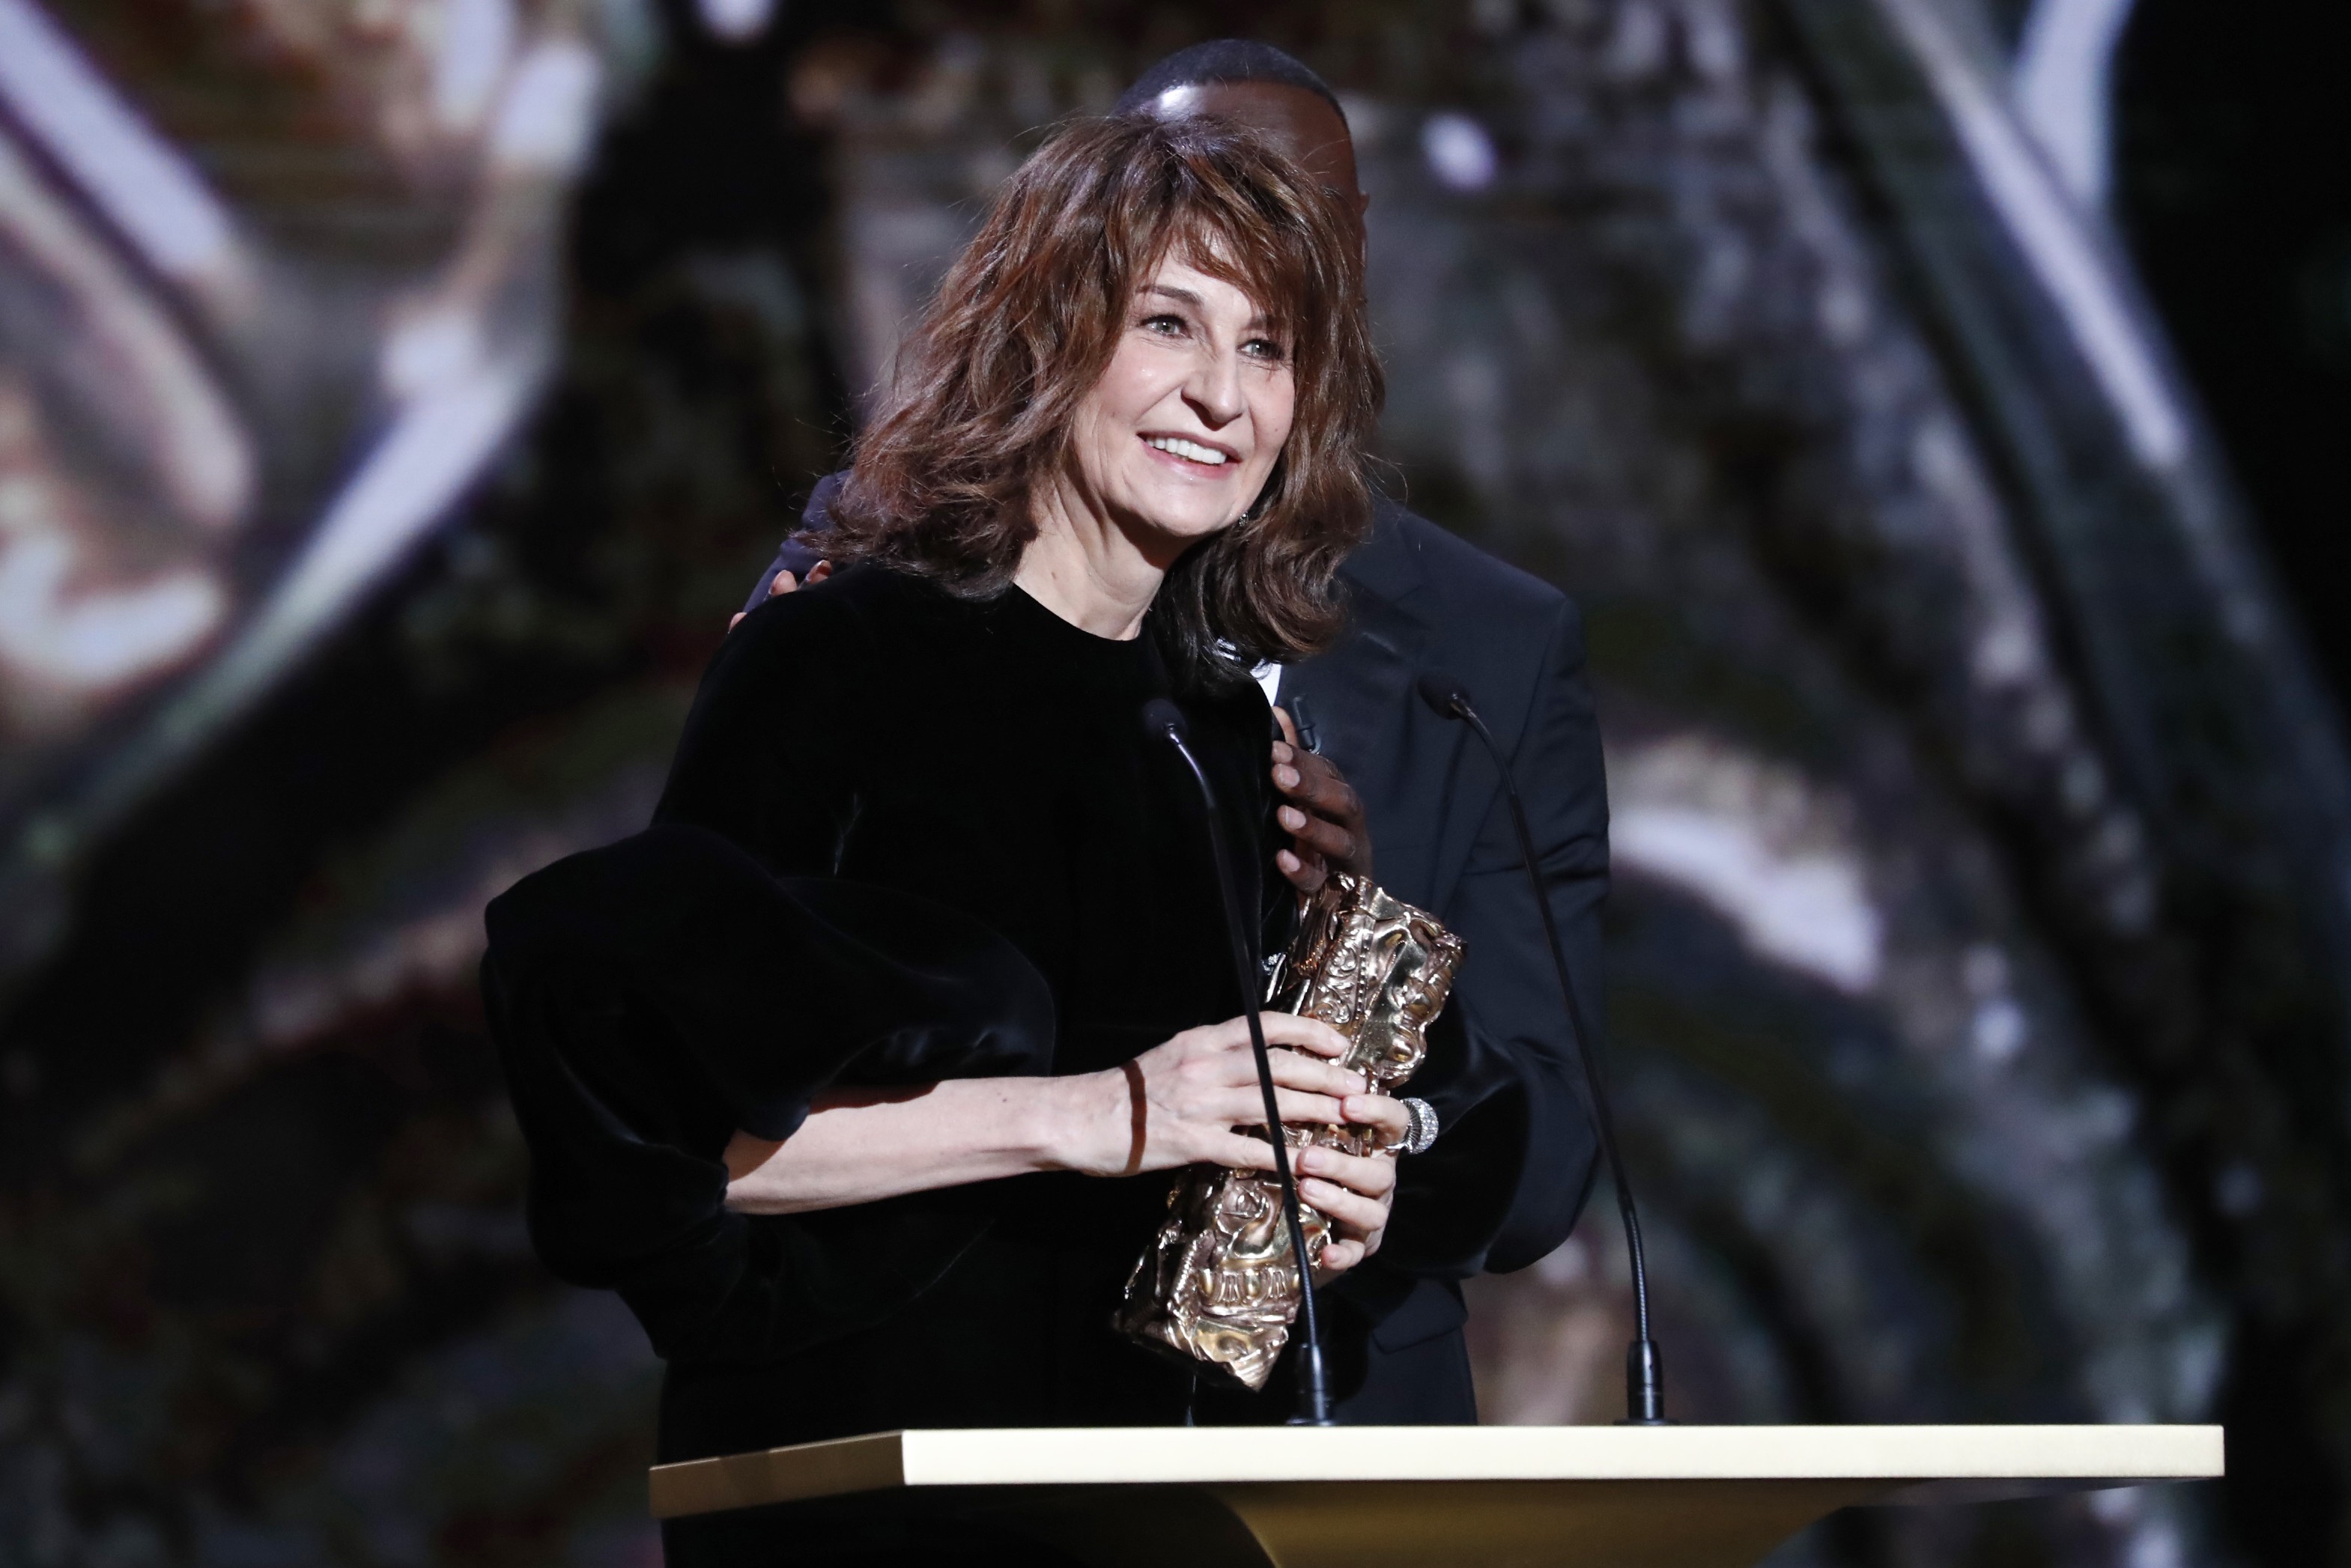 Valérie Lemercier vencer César Awards 2022 de Melhor Atriz (Foto: Getty Images)